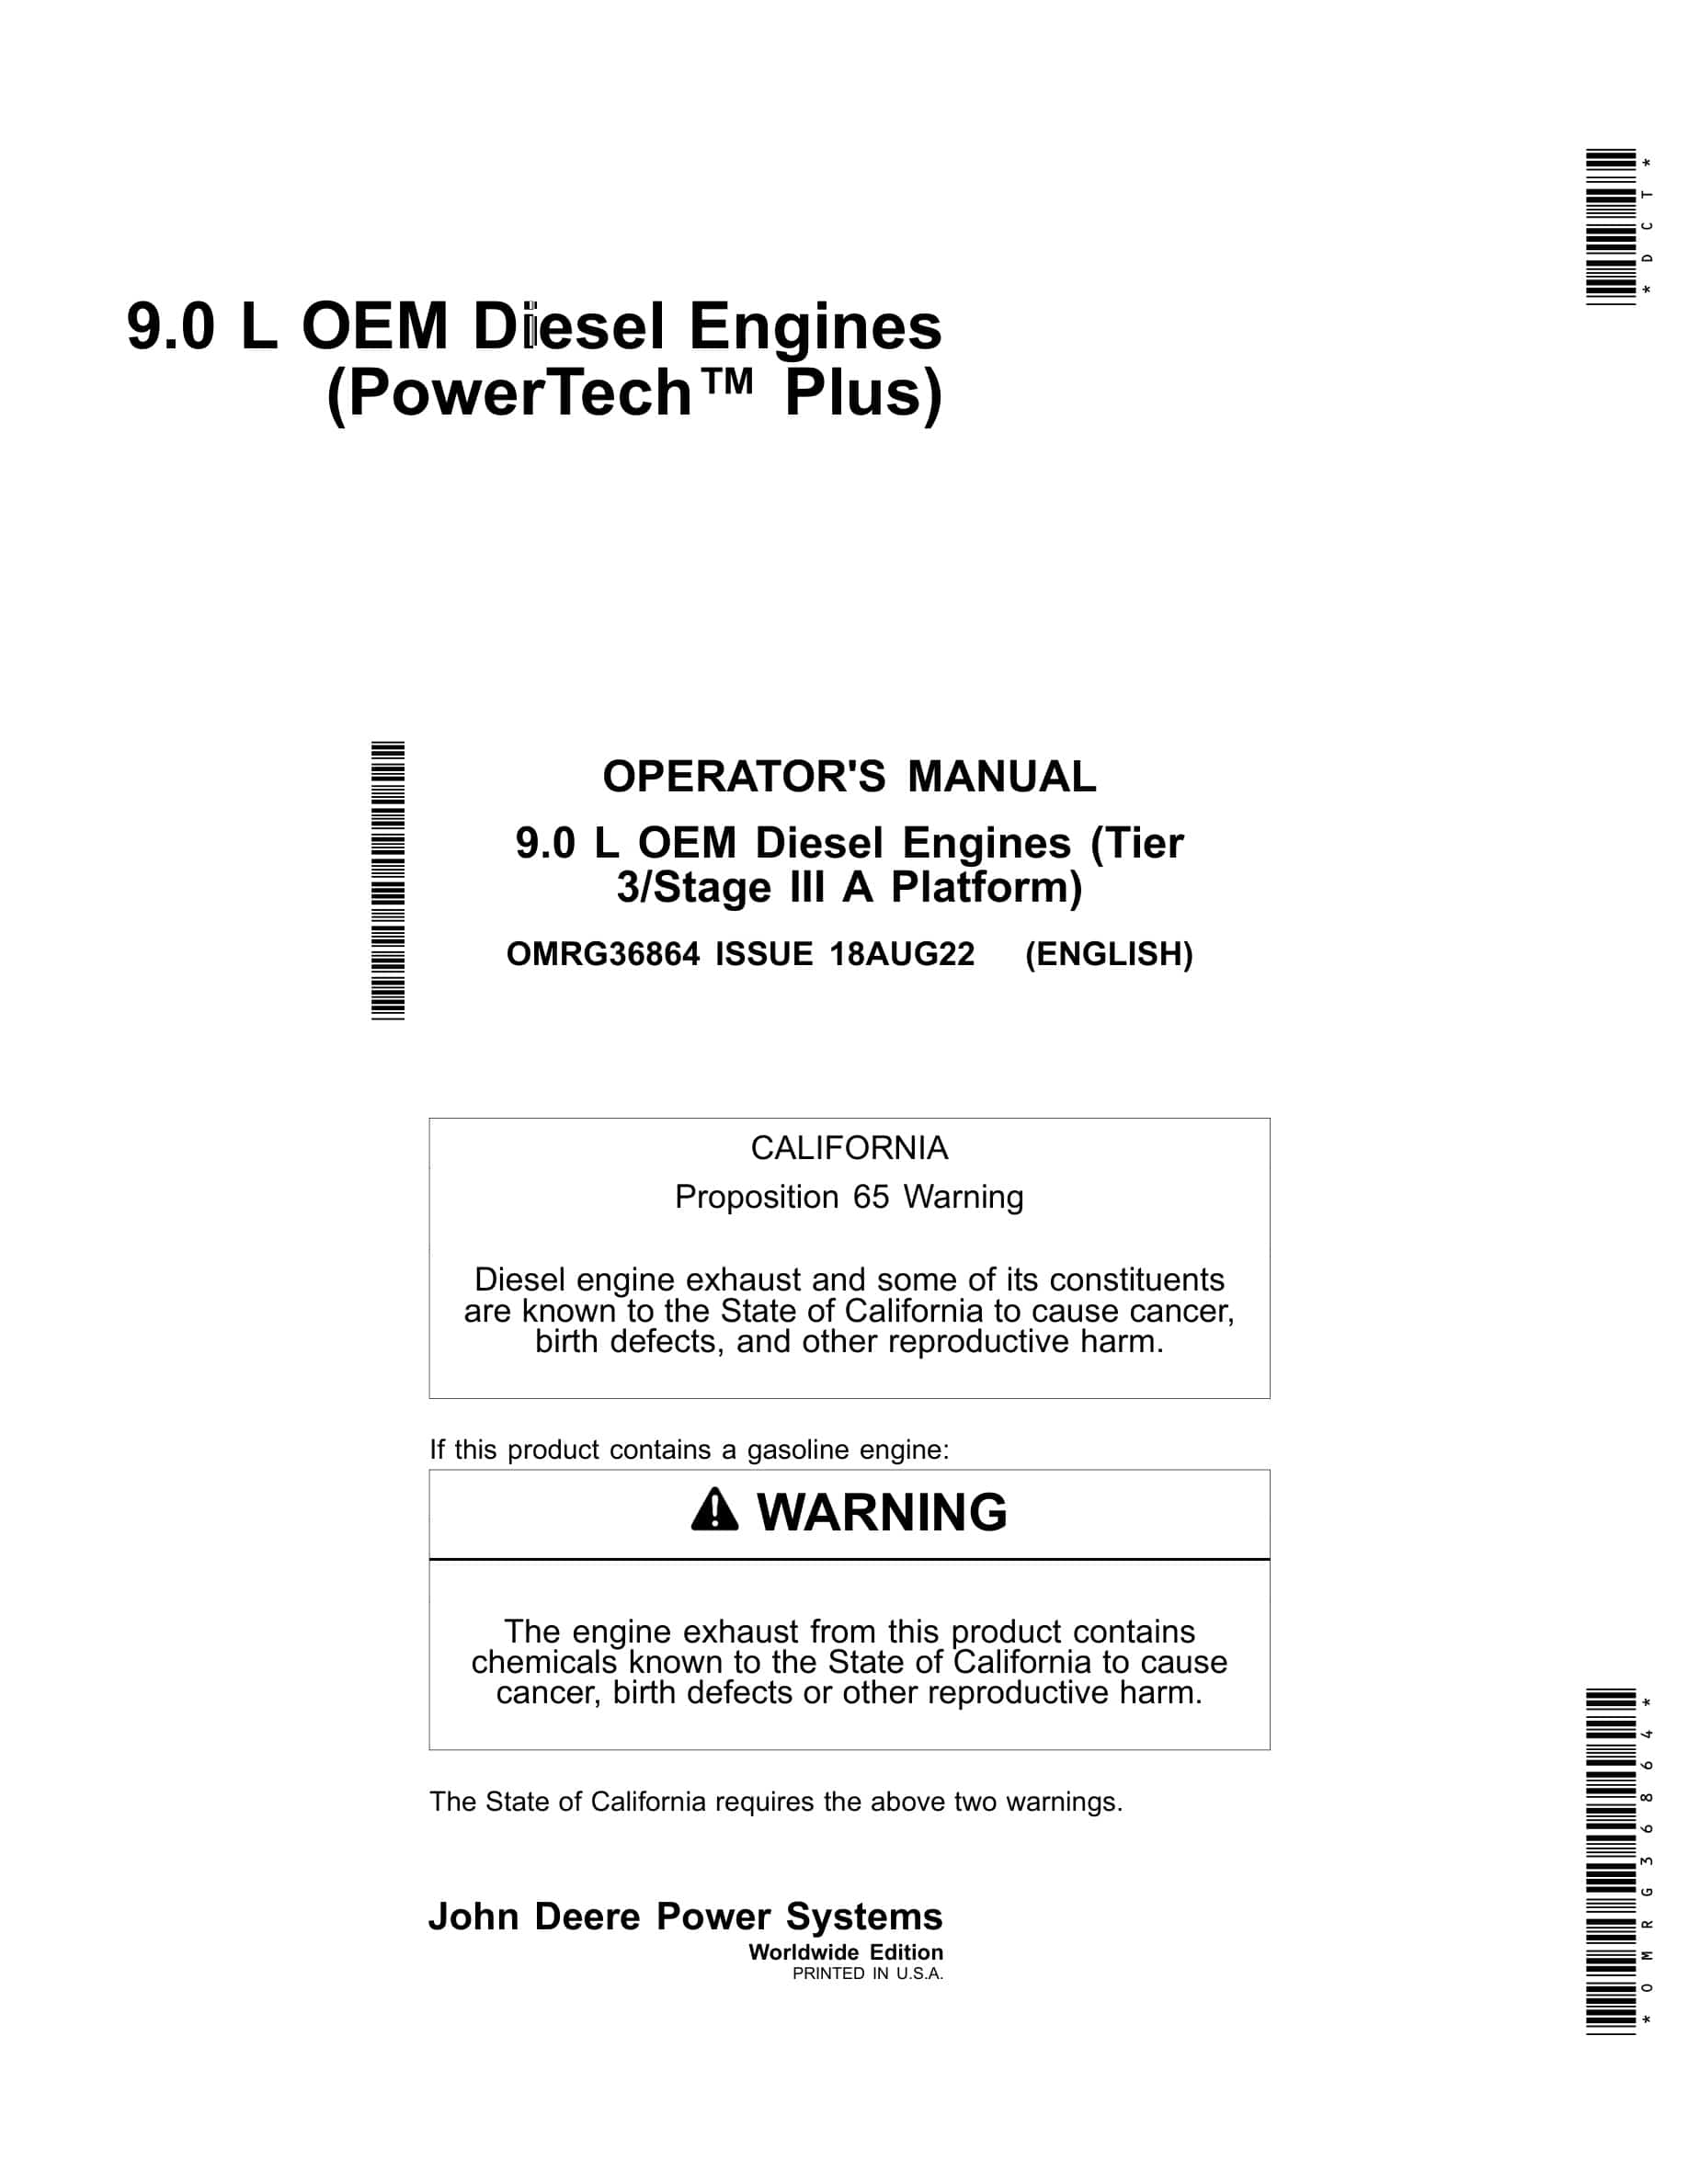 John Deere PowerTech 9.0 L OEM (Tier 3 Stage III A Platform) Diesel Engines Operator Manual OMRG36864-1